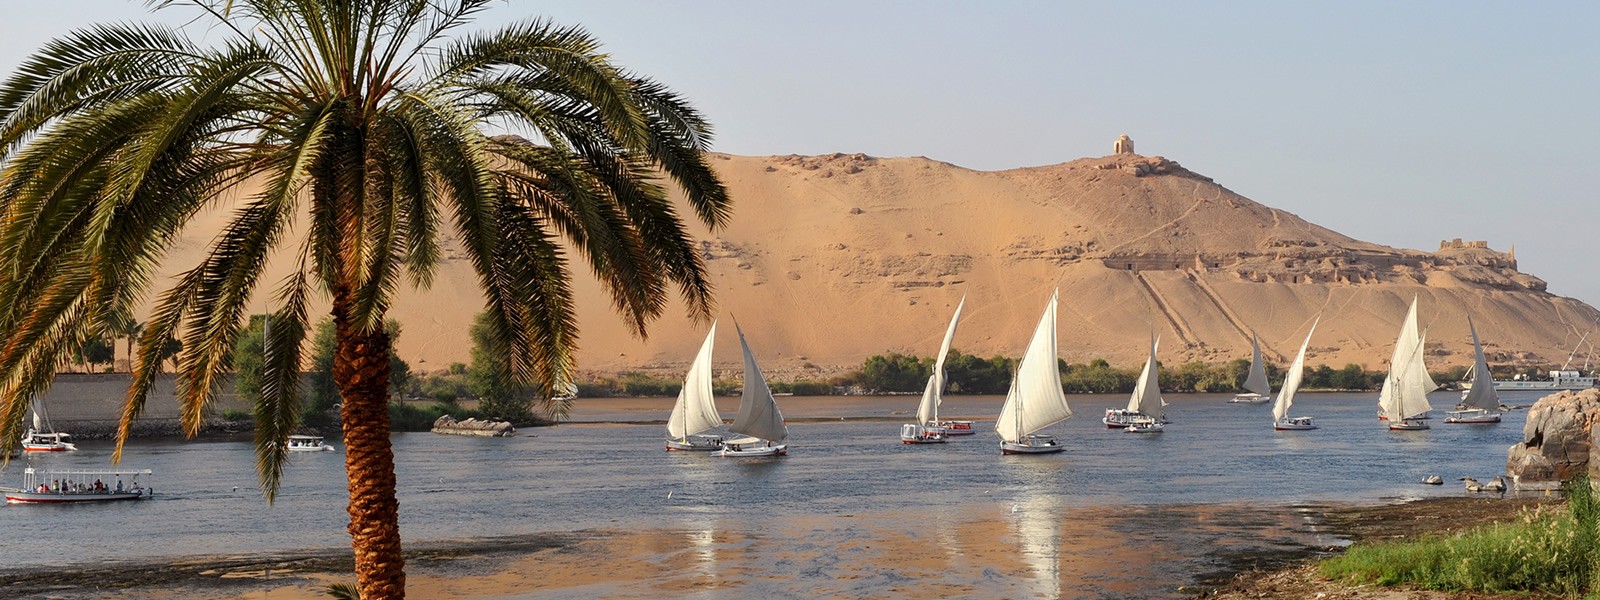 Cairo -Asuán -Luxor - Hurgada – Cairo